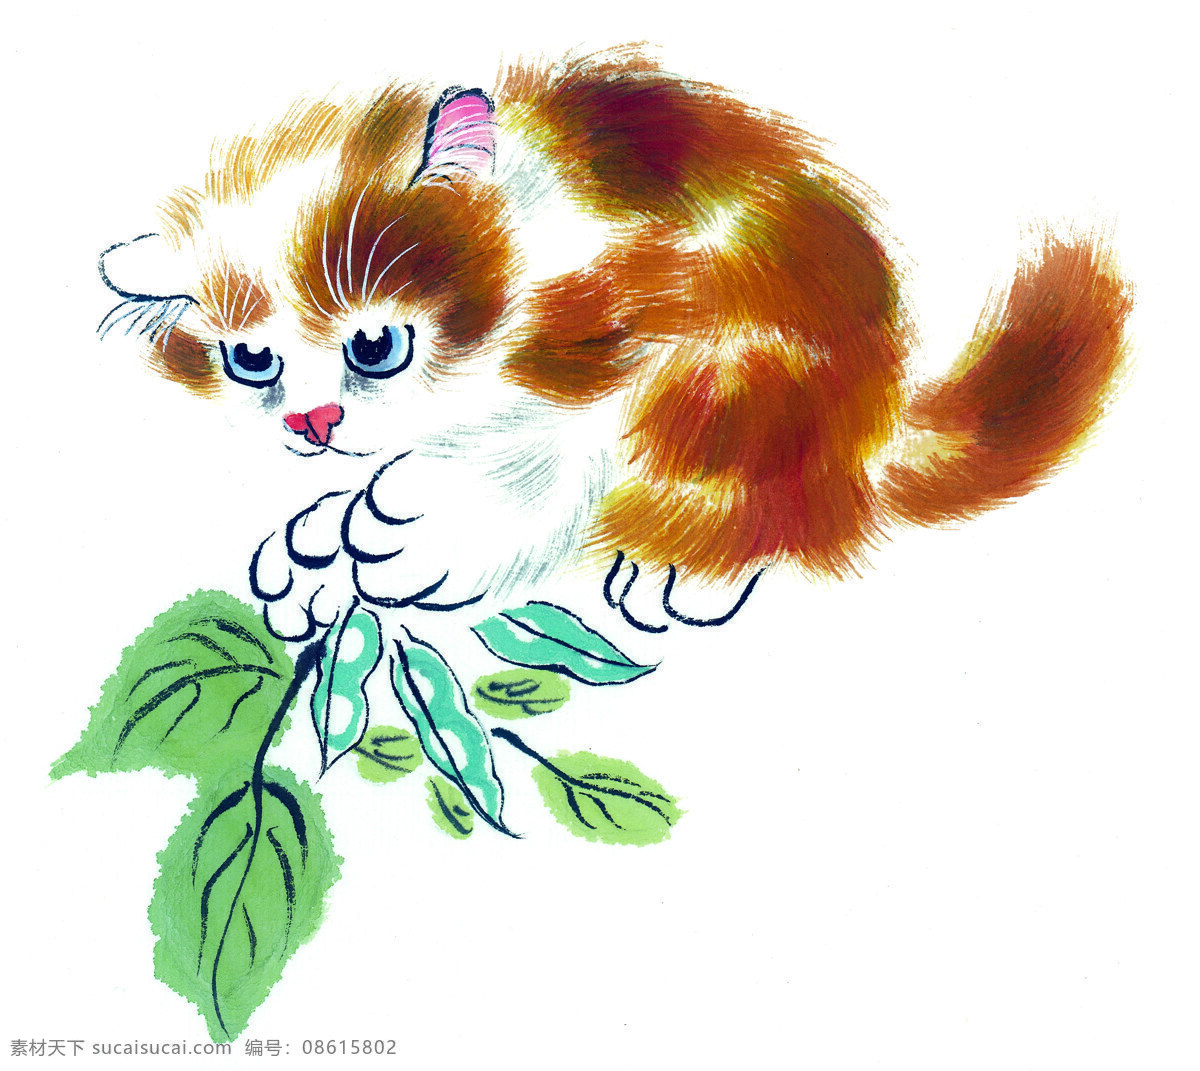 中国国画篇 猫 国画 水墨 工笔 叶子 眼睛 中国国画篇猫 文化艺术 绘画书法